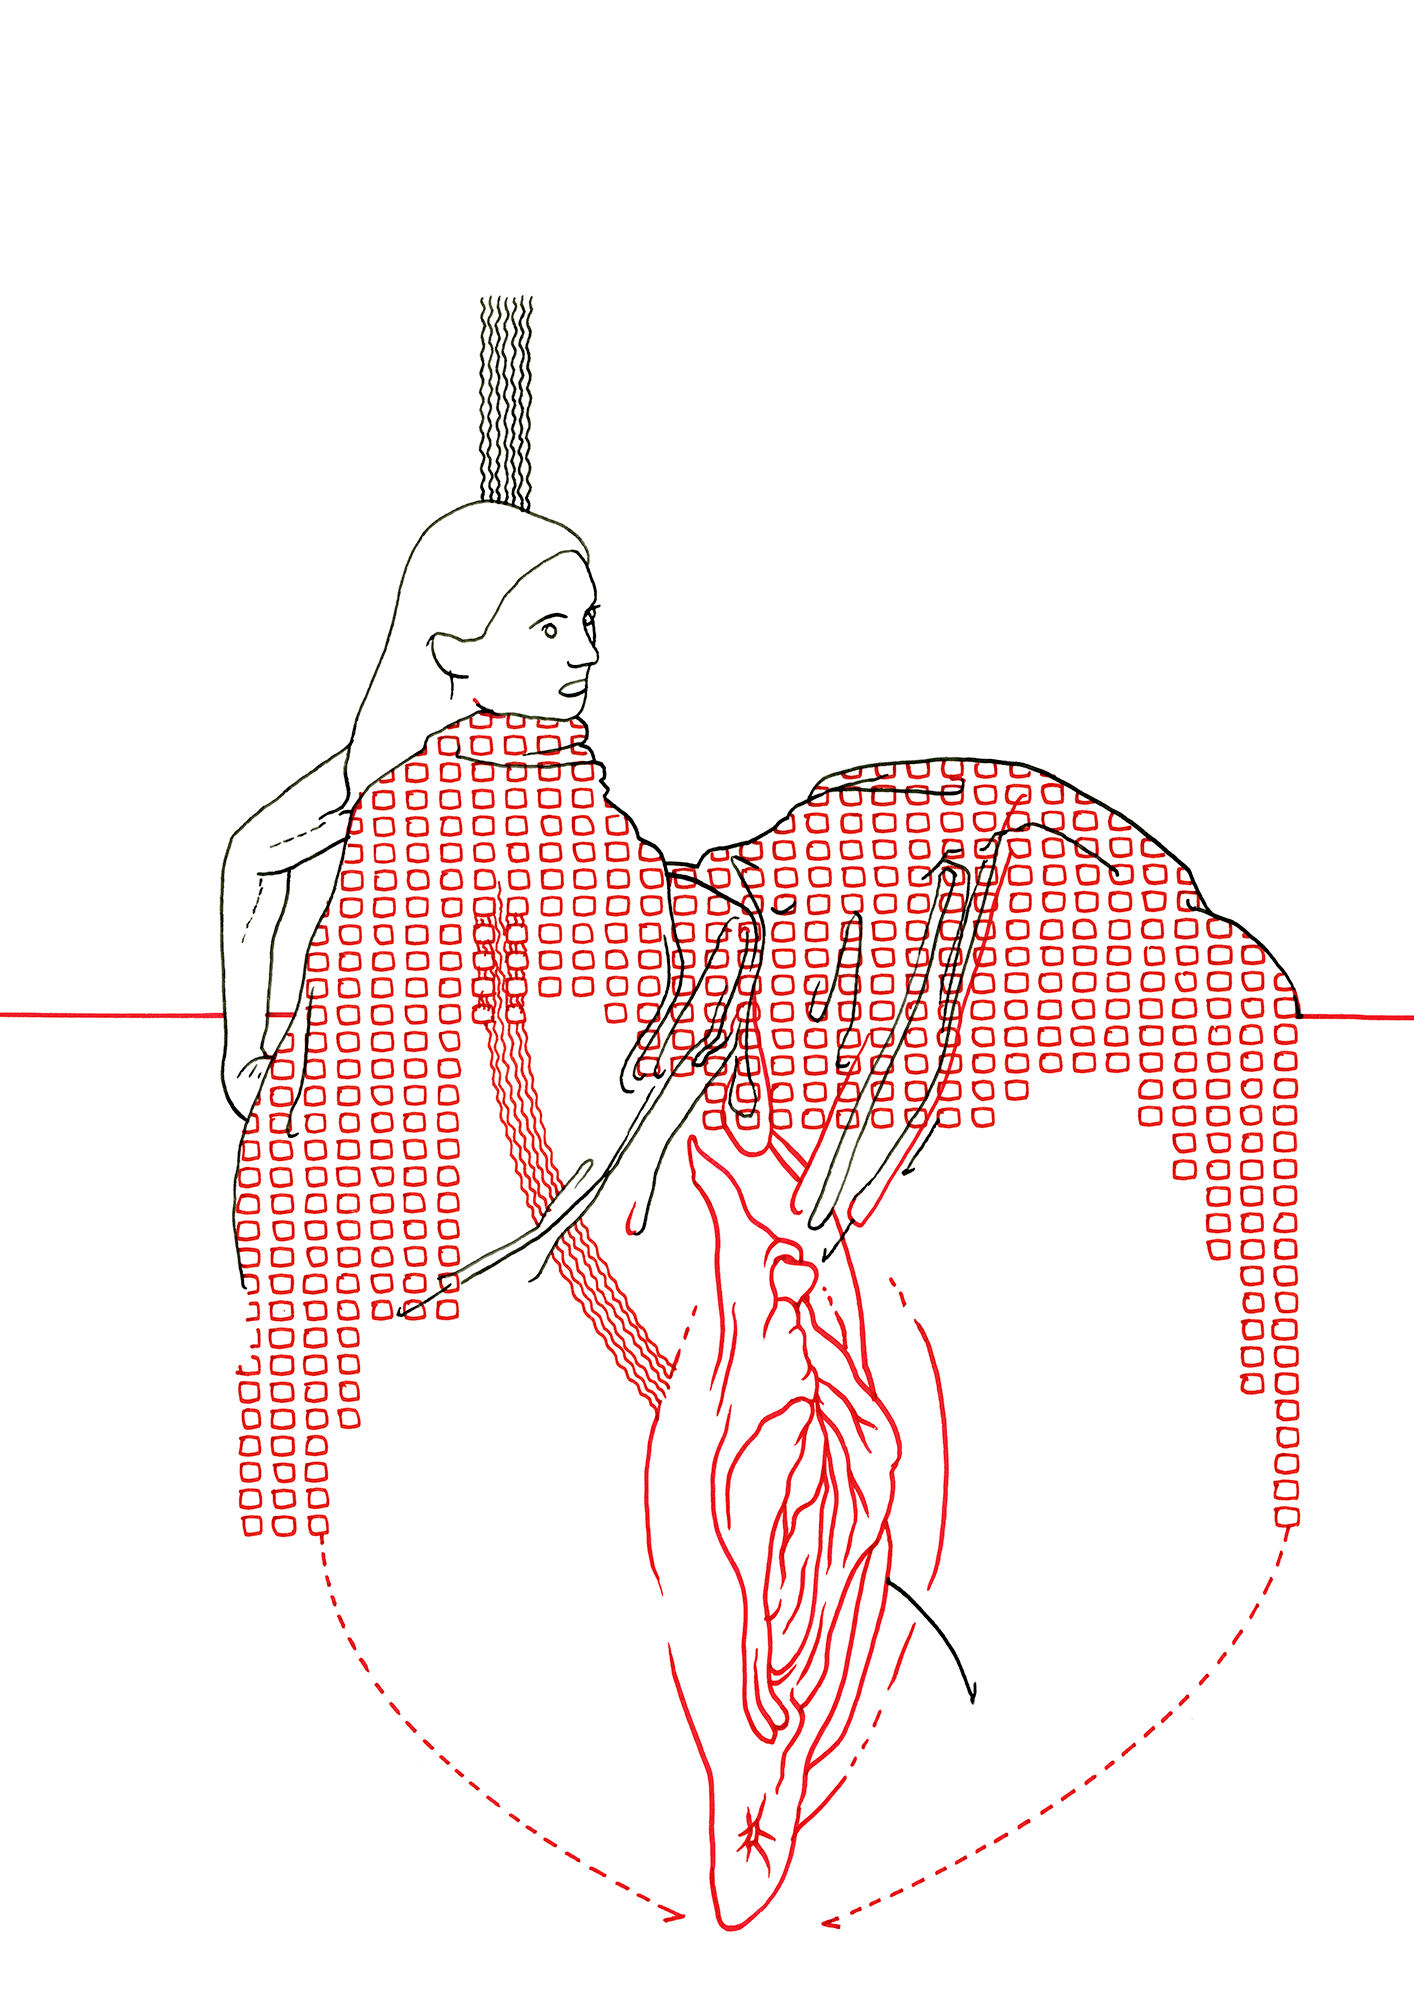 Hannes Kater: Tageszeichnung (Zeichnung/drawing) vom 29.12.2014 (1414 x 2000 Pixel)